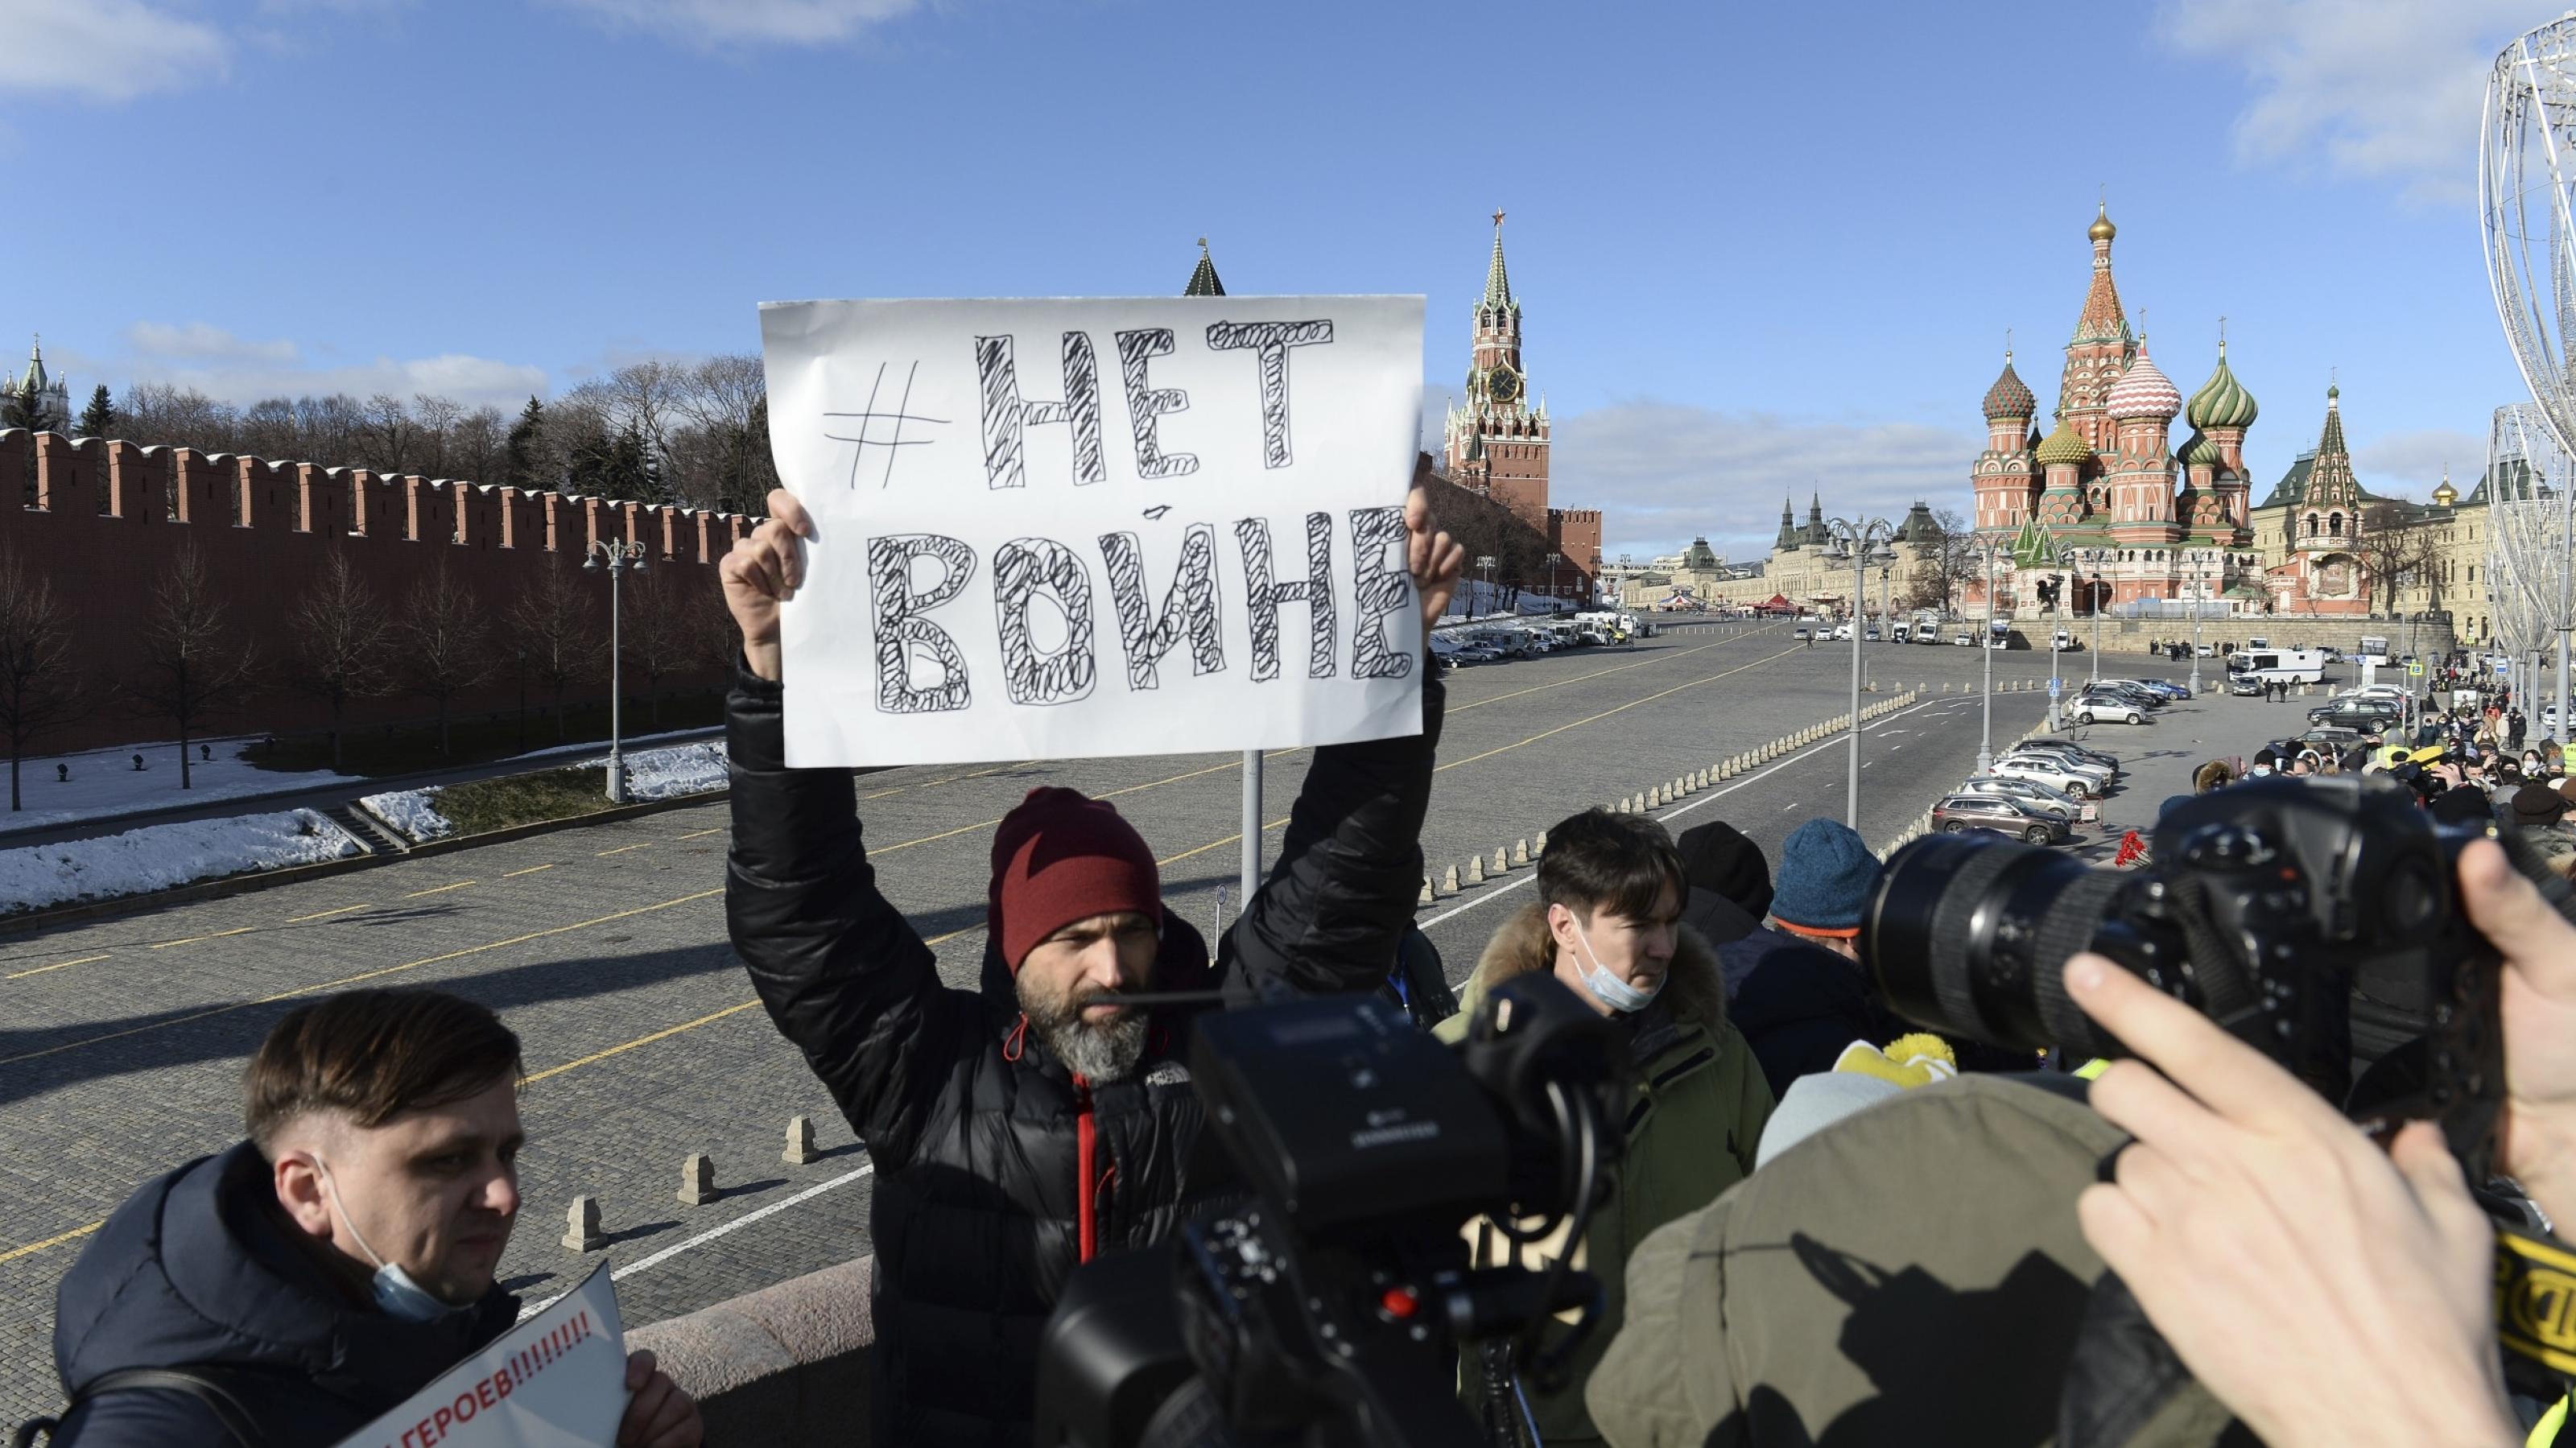 Mann hält ein Schild mit der Aufschrift  „Kein Krieg“ hoch. Im Hintergrund ist die Basilius-Kathedrale des Kreml zu sehen.